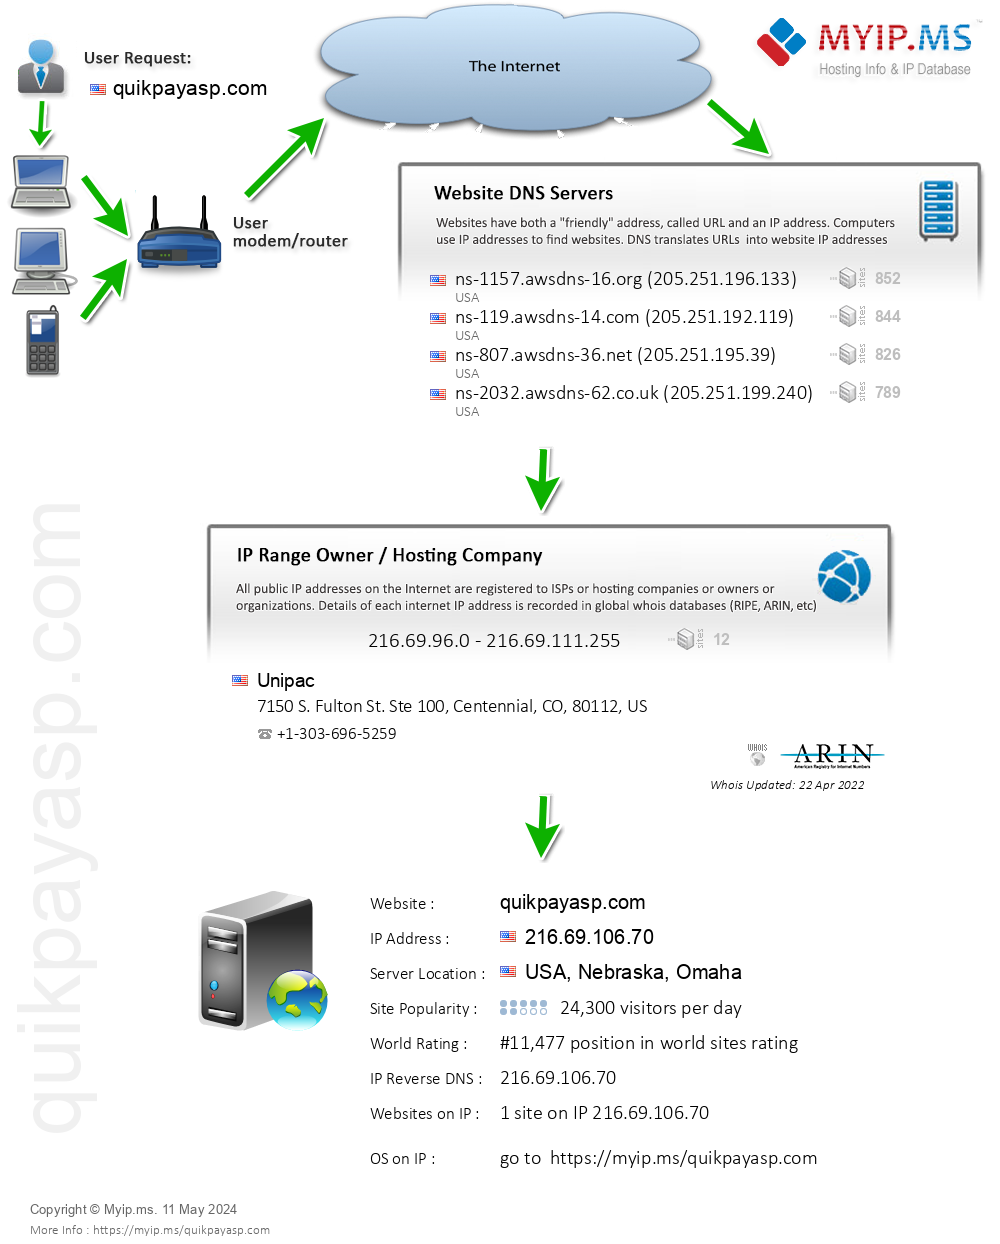 Quikpayasp.com - Website Hosting Visual IP Diagram